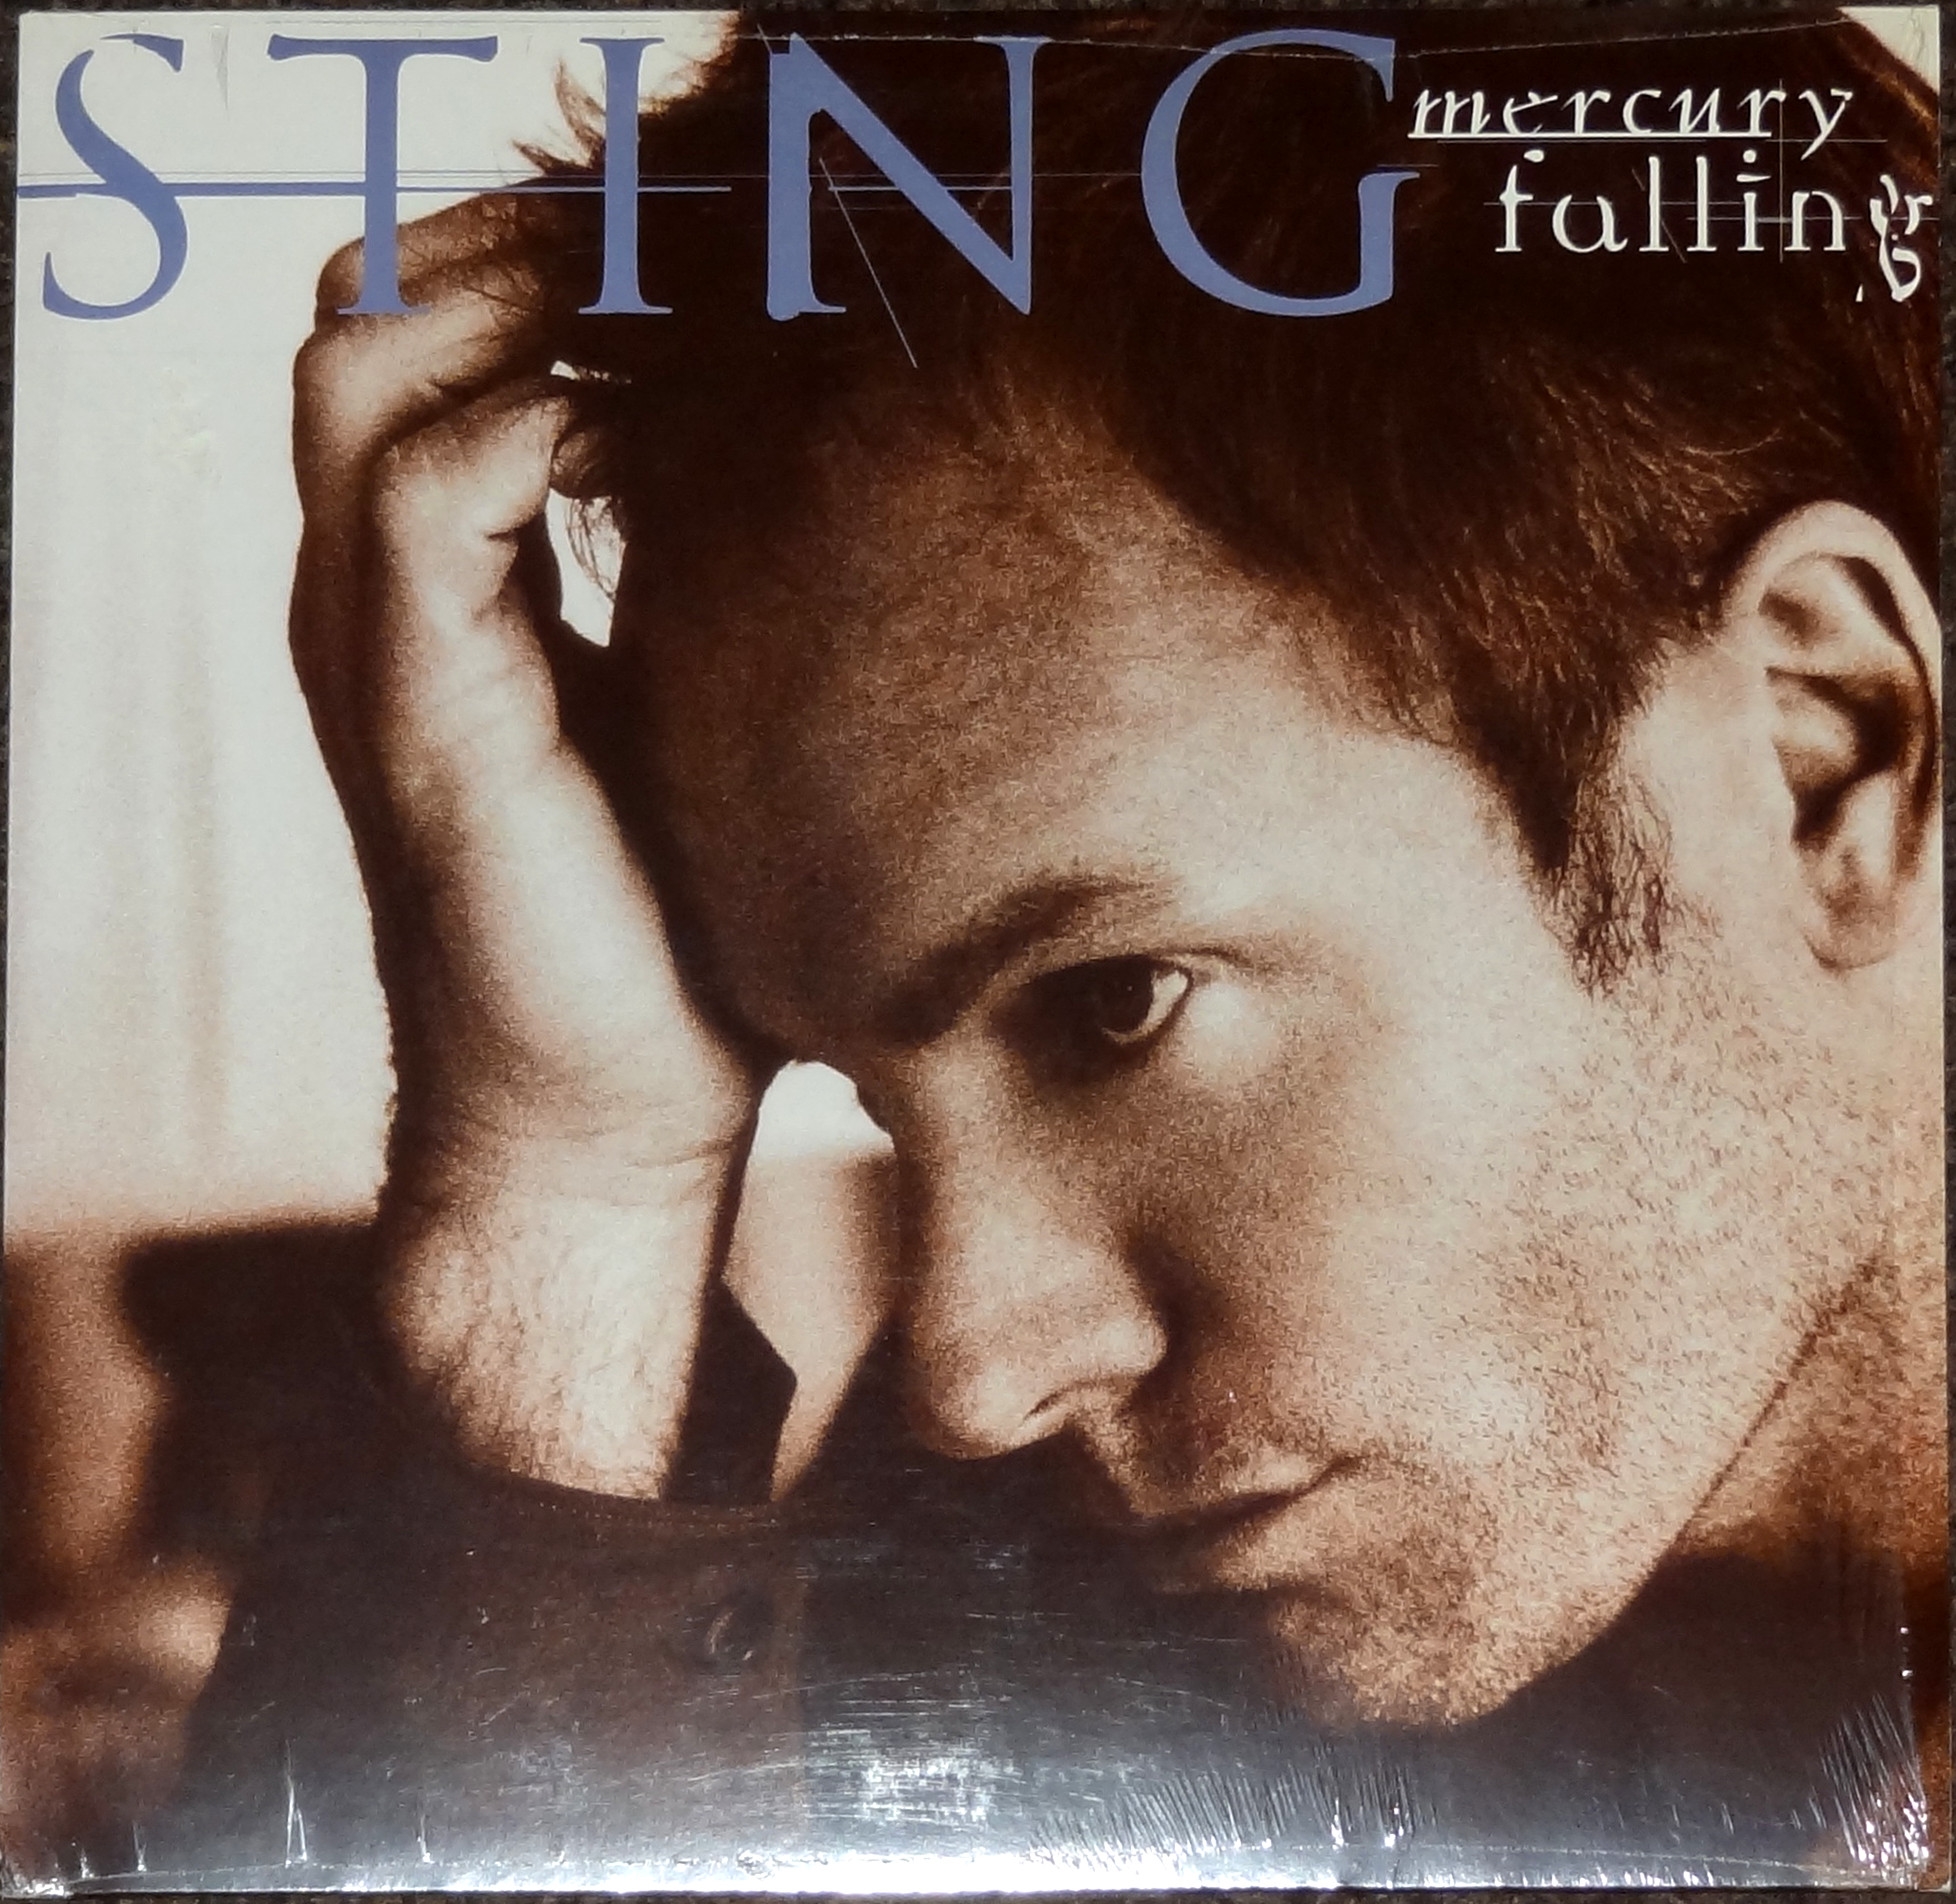 Dame sans regret. Sting 1996. Sting 1996 Mercury Falling. Sting "Mercury Falling". Sting LP Sting.